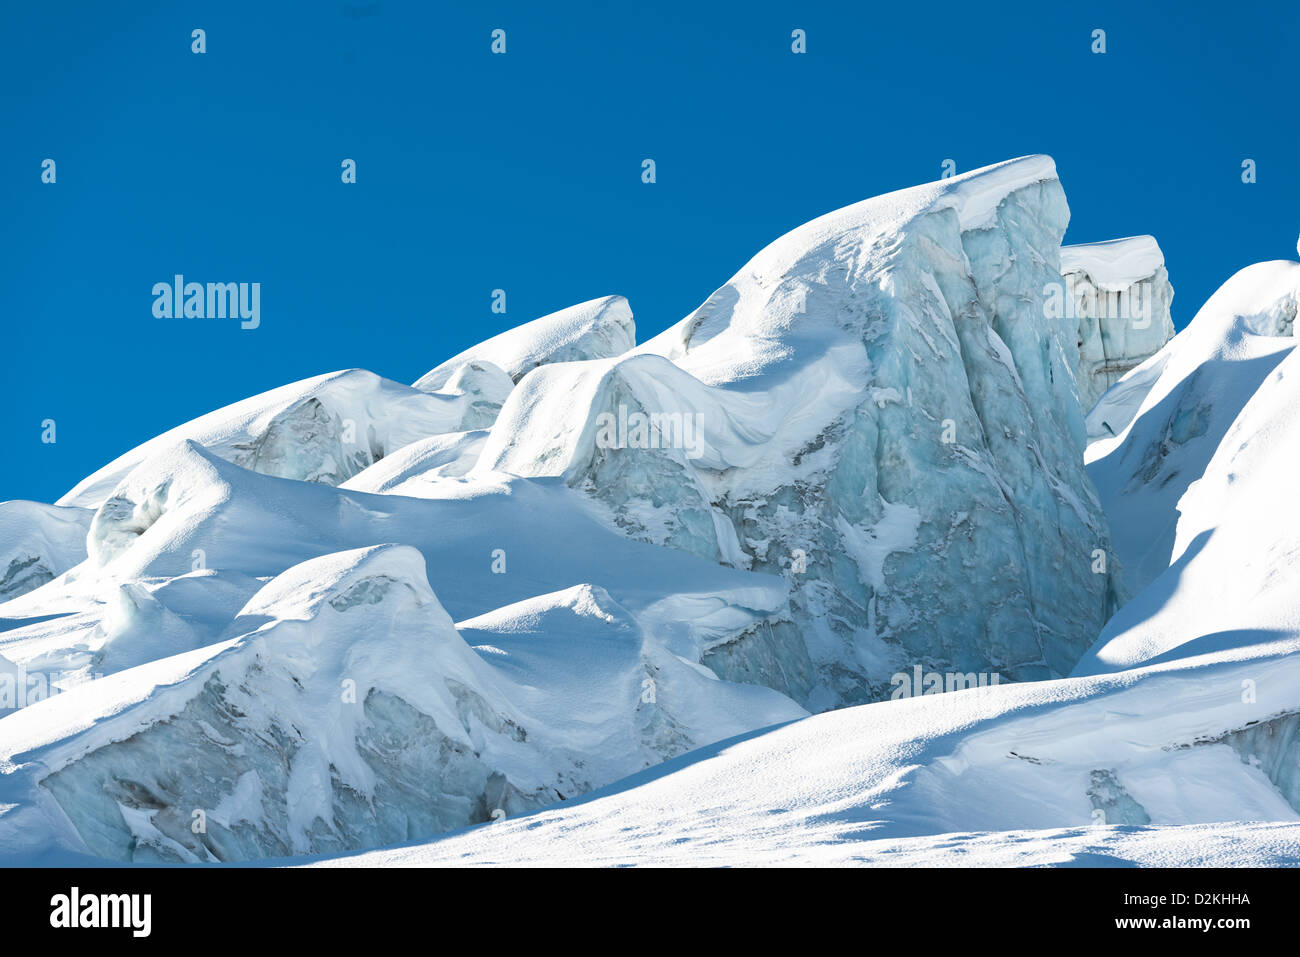 Crevasse glaciaire et structures de glace dans un glacier au-dessus de Saas-Fee, Valais, Suisse Banque D'Images